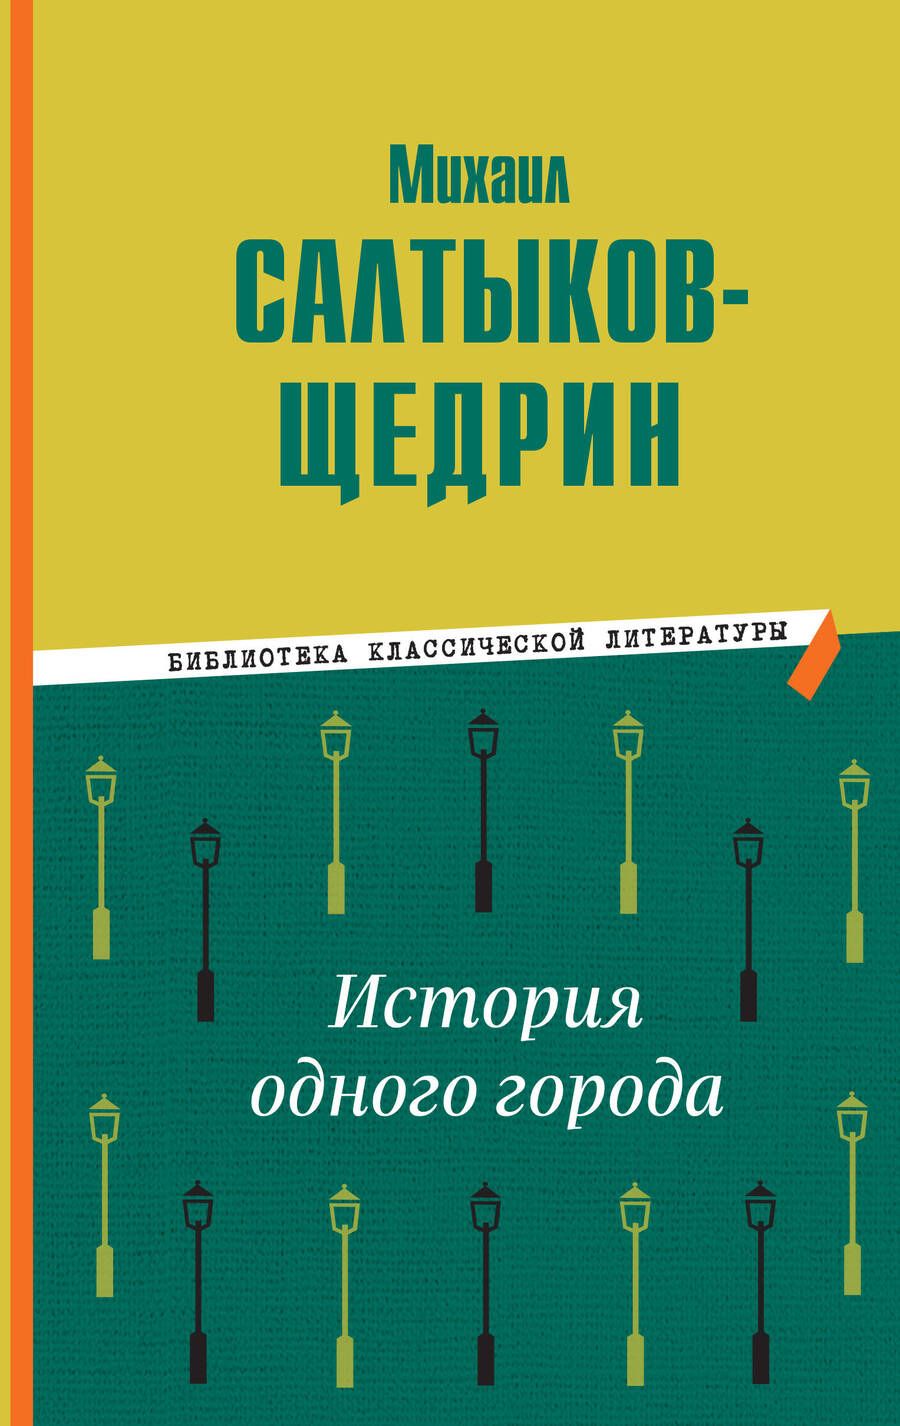 Обложка книги "Салтыков-Щедрин: История одного города"